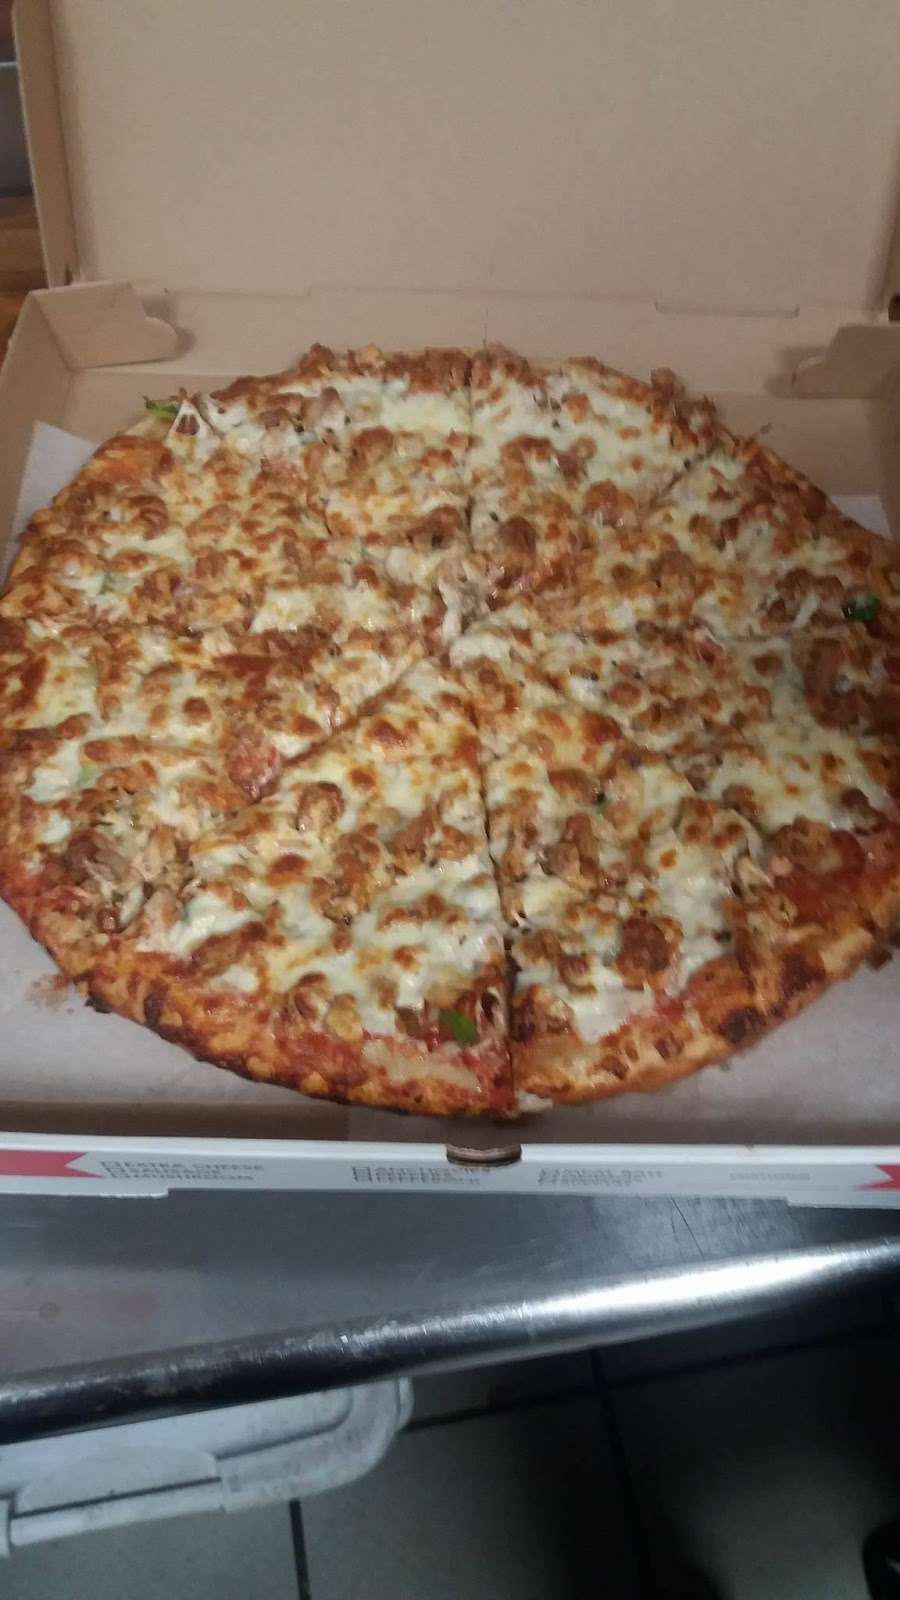 Papas Halal Fried Chicken & Pizza | 1036 Coney Island Ave, Brooklyn, NY 11230, USA | Phone: (718) 421-5600